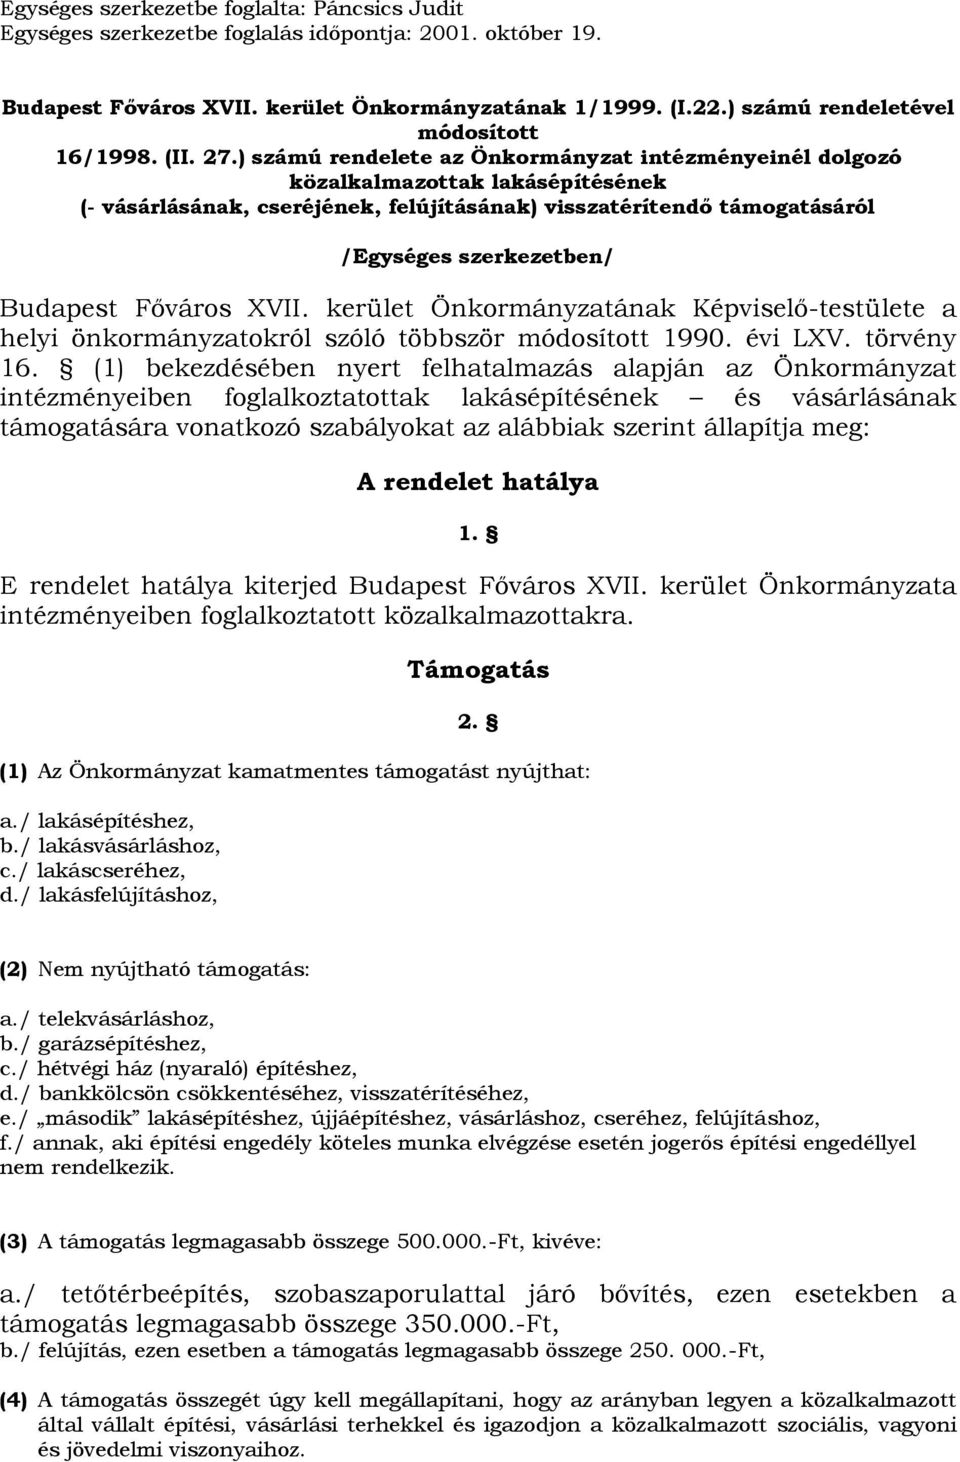 ) számú rendelete az Önkormányzat intézményeinél dolgozó közalkalmazottak lakásépítésének (- vásárlásának, cseréjének, felújításának) visszatérítendő támogatásáról /Egységes szerkezetben/ Budapest